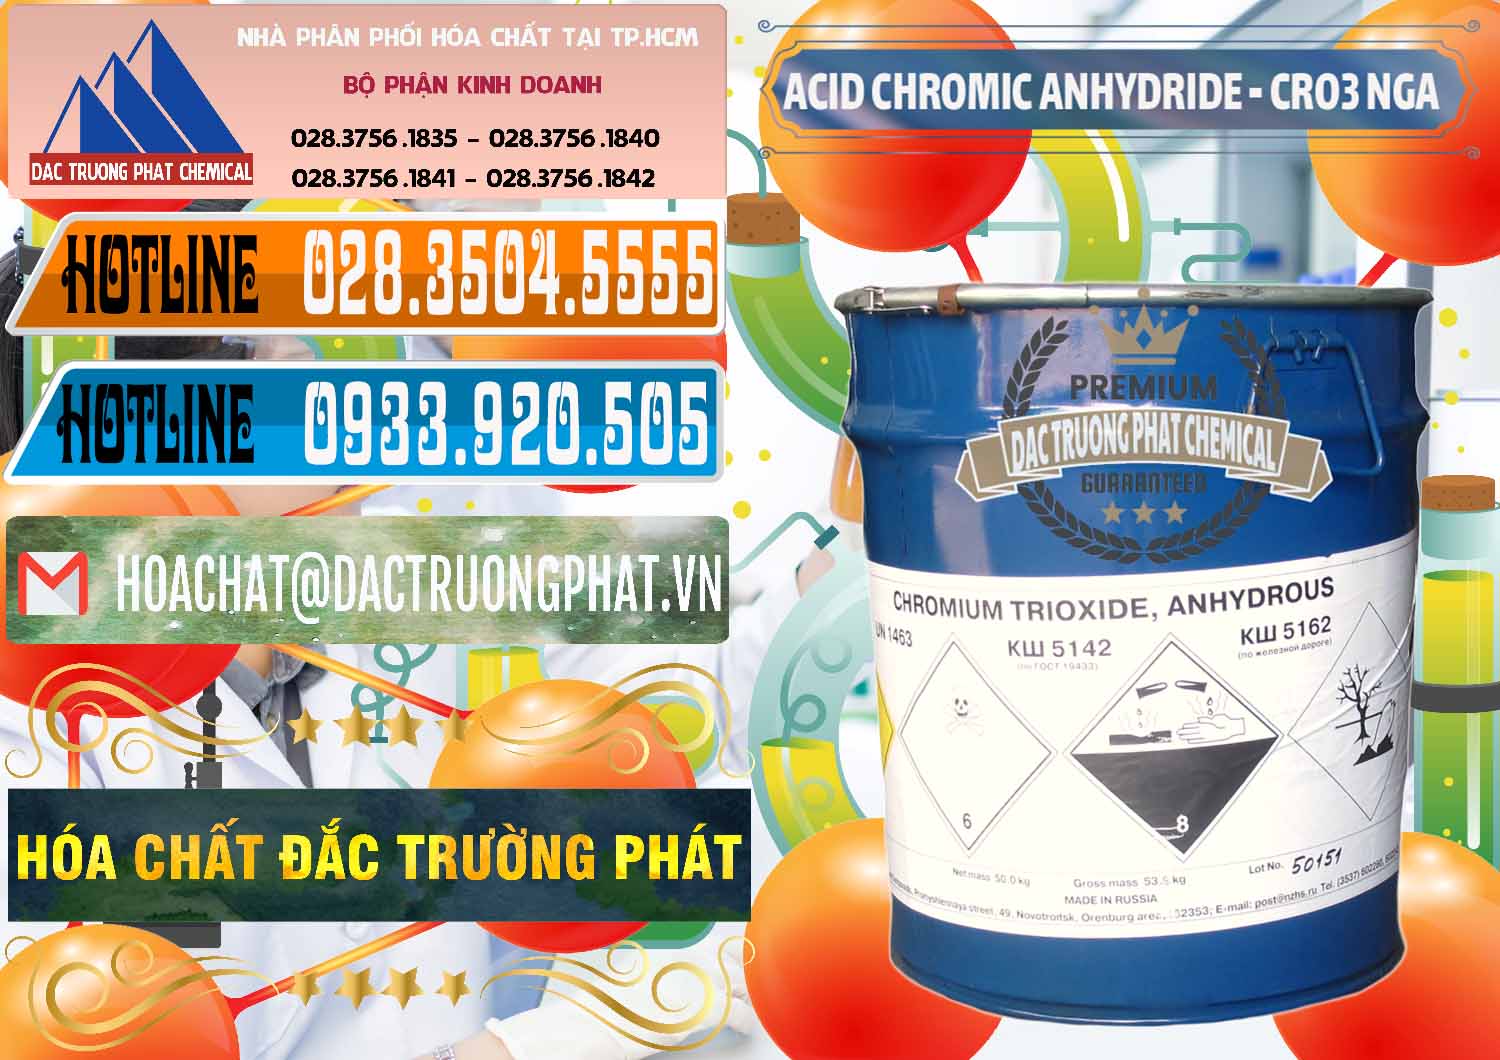 Nhập khẩu và bán Acid Chromic Anhydride - Cromic CRO3 Nga Russia - 0006 - Cty bán & cung cấp hóa chất tại TP.HCM - stmp.net